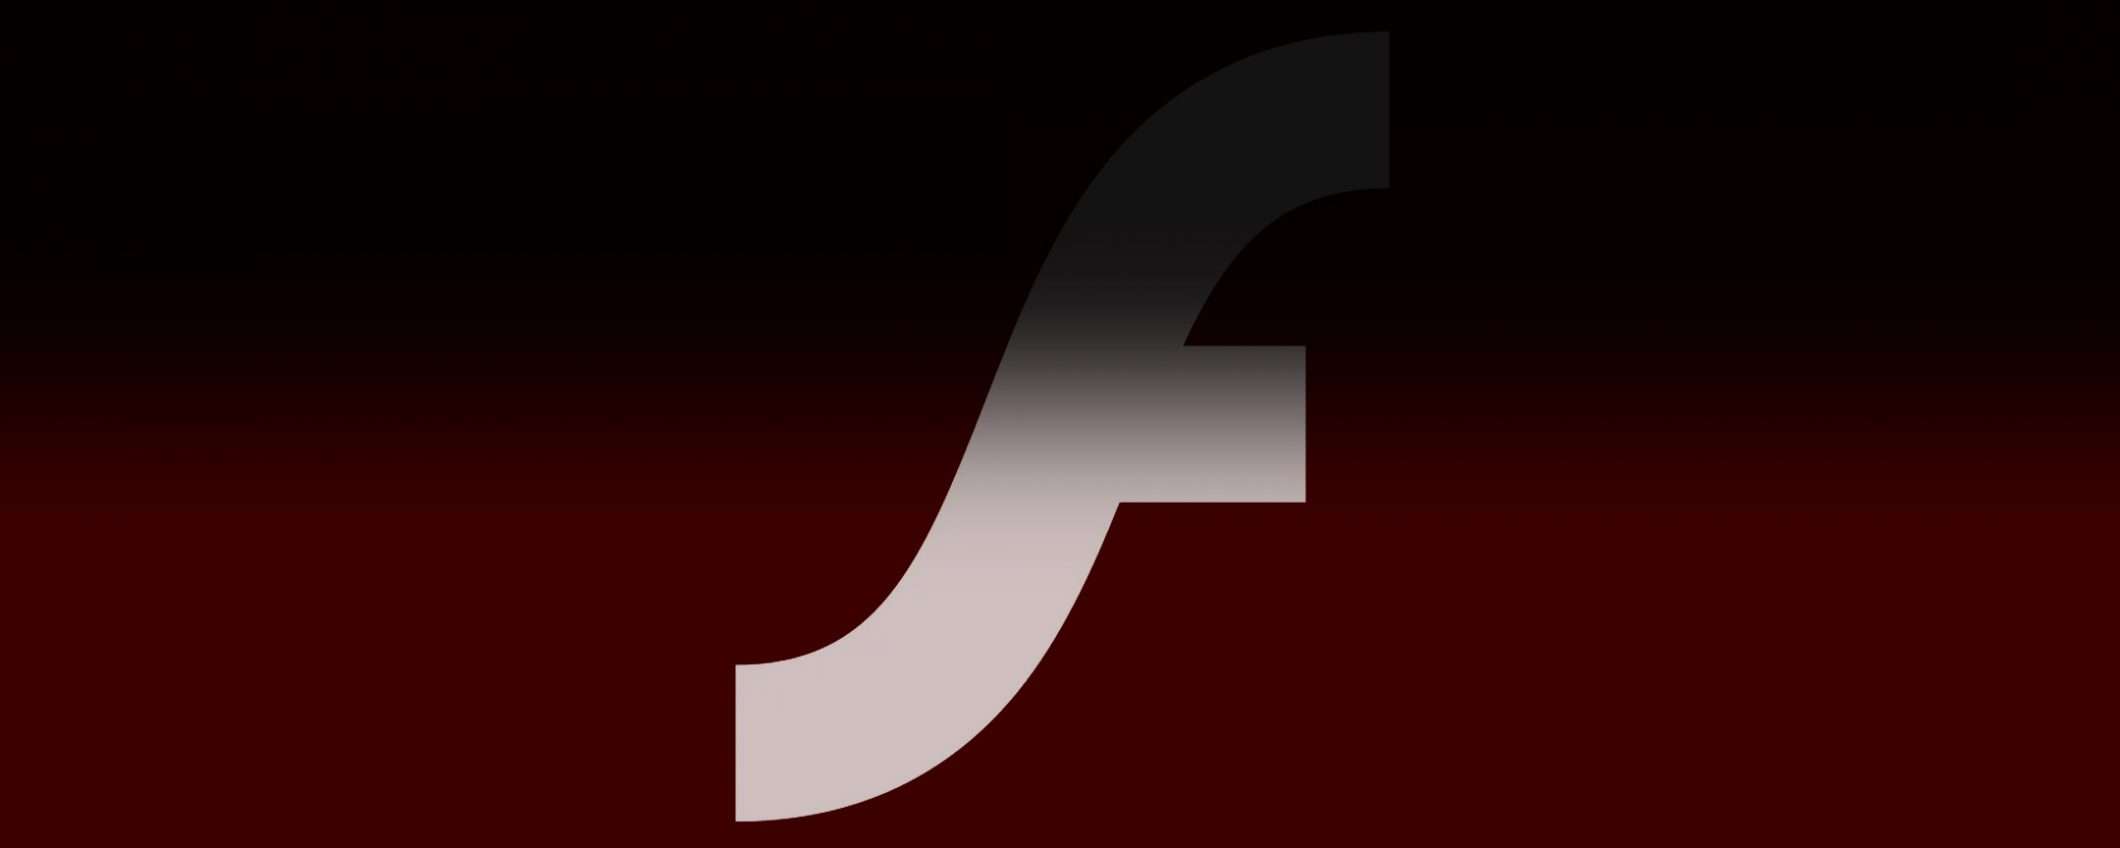 Windows 10: un messaggio chiede di eliminare Flash